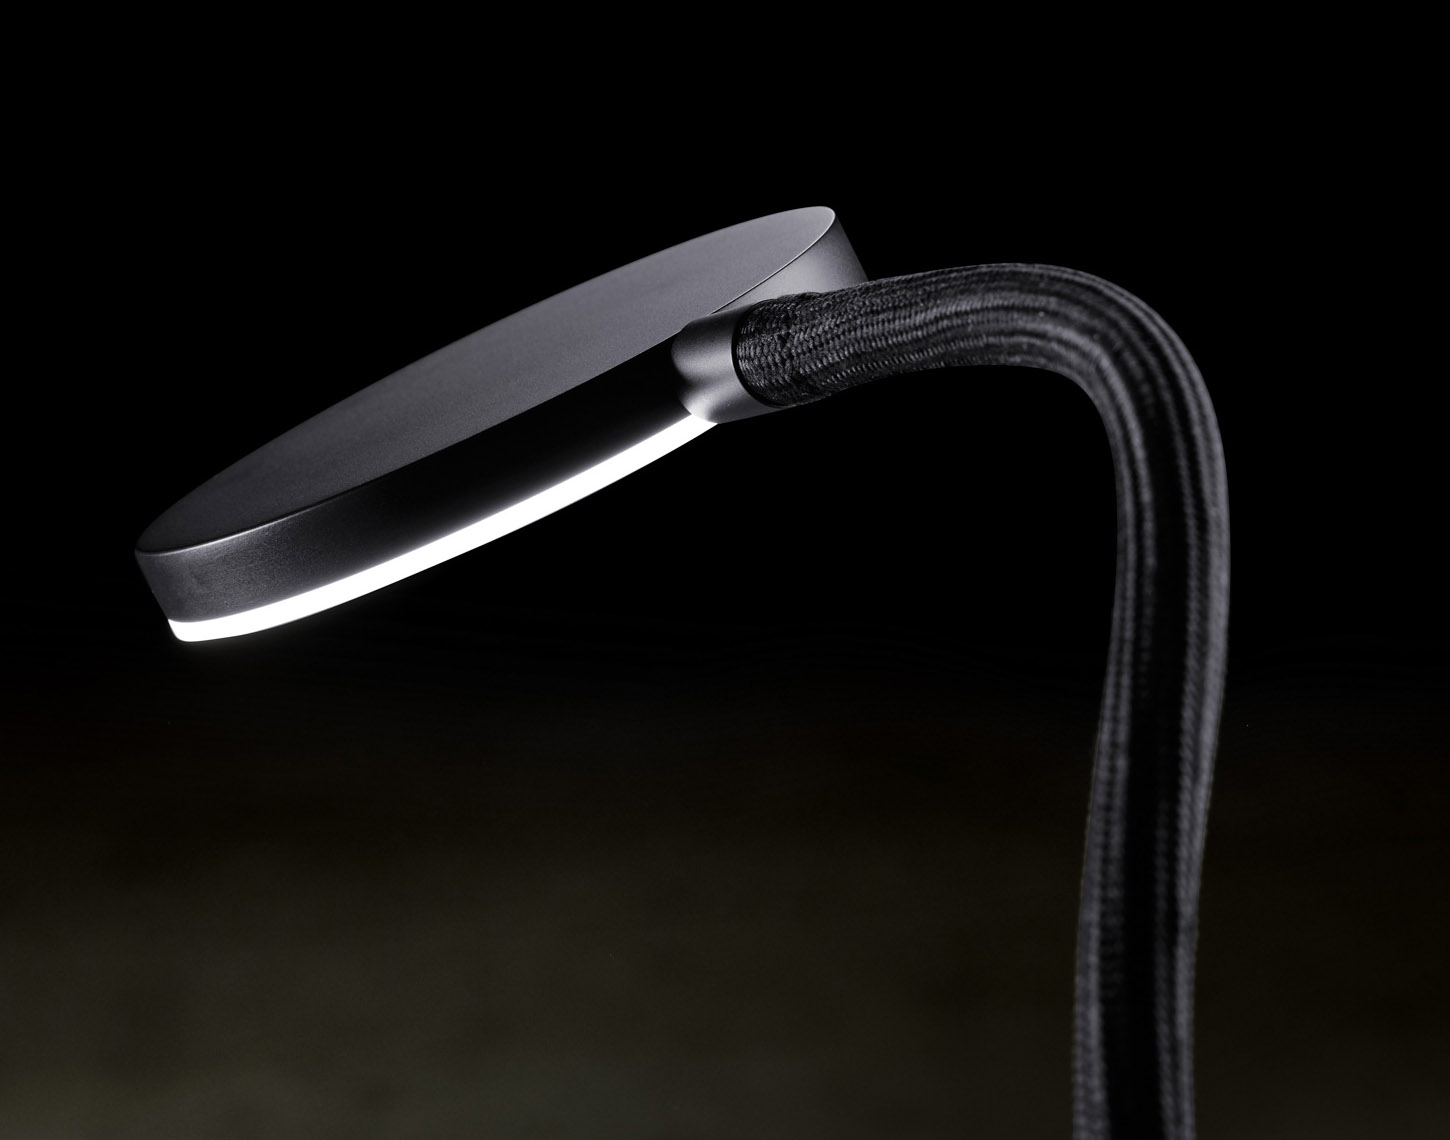 Wandleuchte FLEX W mit Flexarm, High End-LED und Drehdimmer: Hier mit schwarzer Oberfläche und schwarzem Flexarm